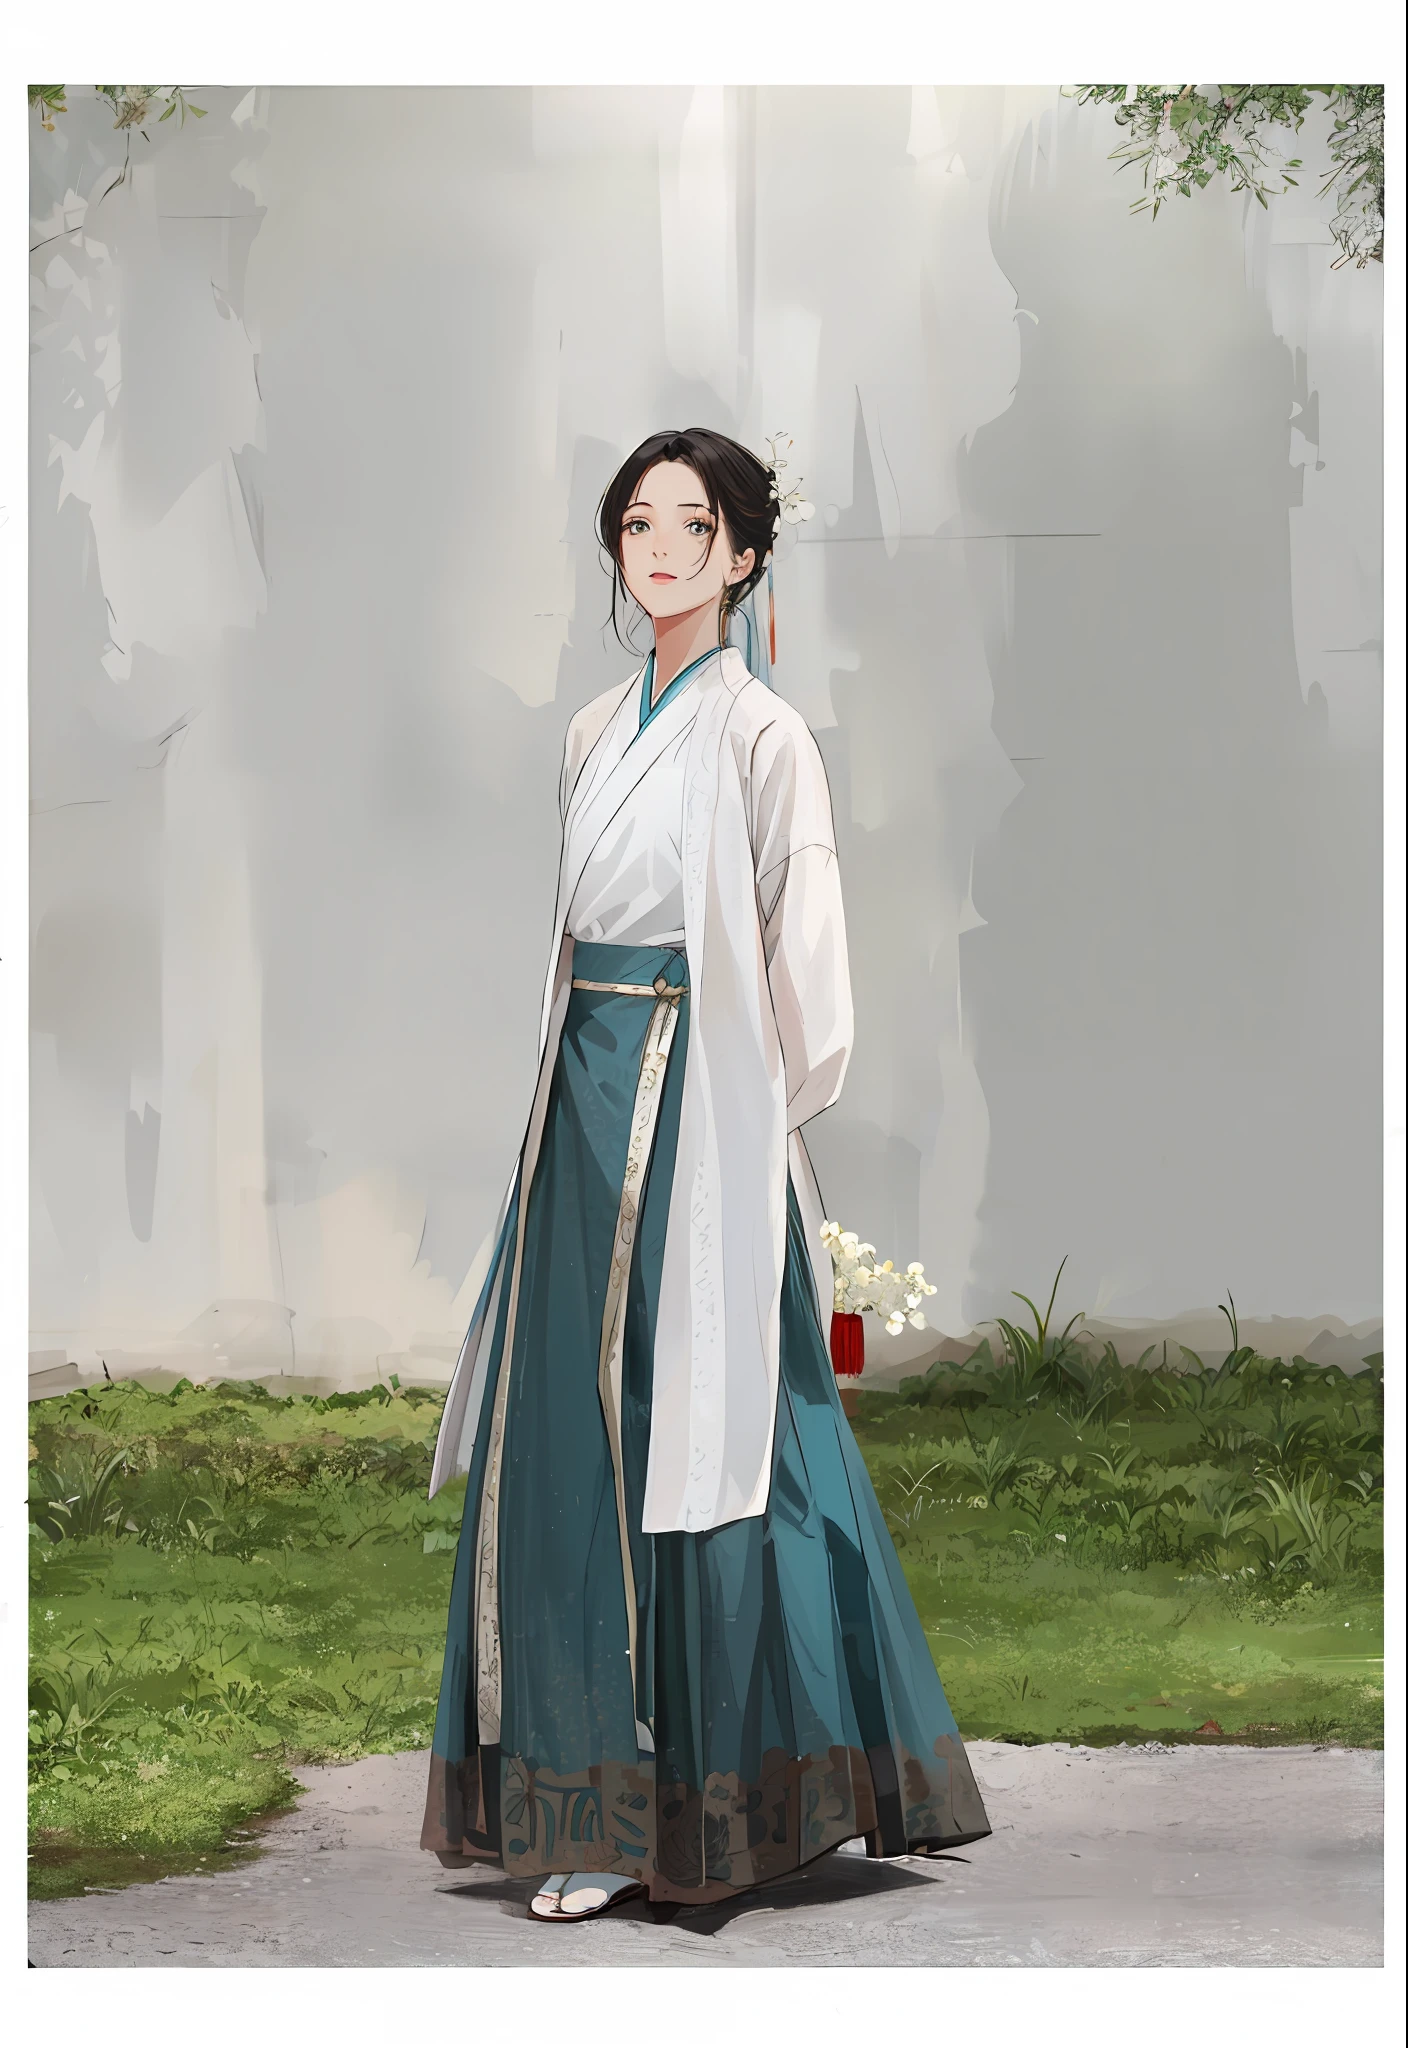 eine Frau in einem langen Kleid und einem weißen Hemd steht auf einem Bürgersteig, weißer Hanfu, hanfu, traditionelle chinesische Kleidung, weißes und blaugrünes Kleidungsstück, das Tragen antiker chinesischer Kleidung, mit antiker chinesischer Kleidung, inspiriert von Gu An, Palast ， Ein Mädchen in Hanfu, traditionelle Kleidung, mit langen, fließenden Kleidern bekleidet, Stil von Guohua, Japanische Kleidung